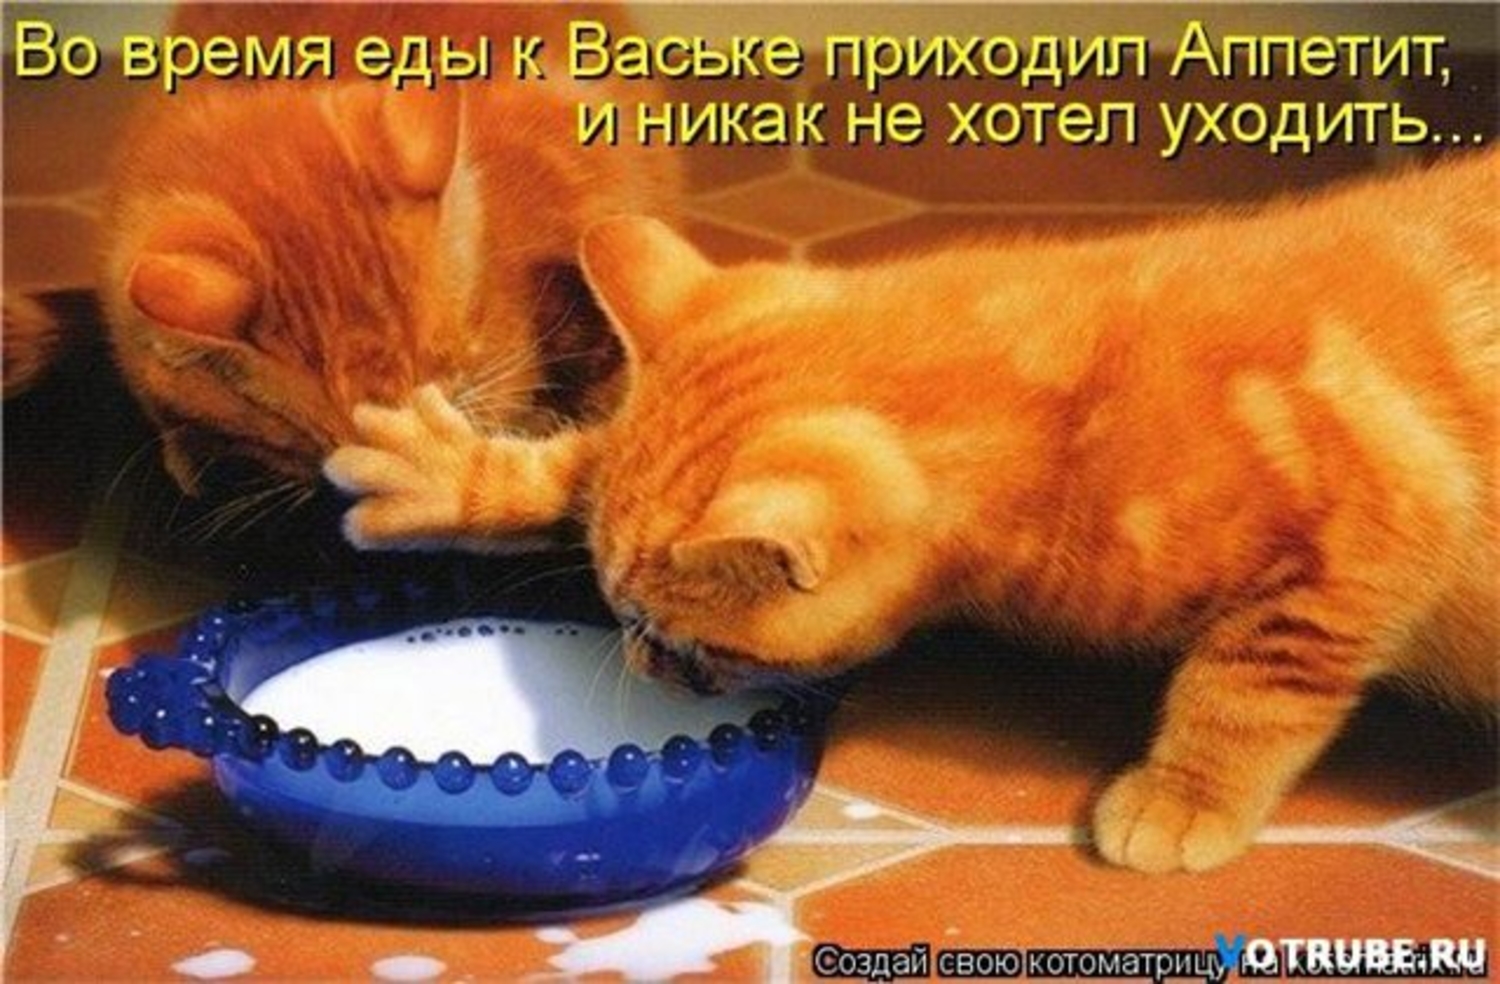 Жадные голодные. Кот хочет есть. Жадные коты. Миска для кота. Рыжий кот кушает.